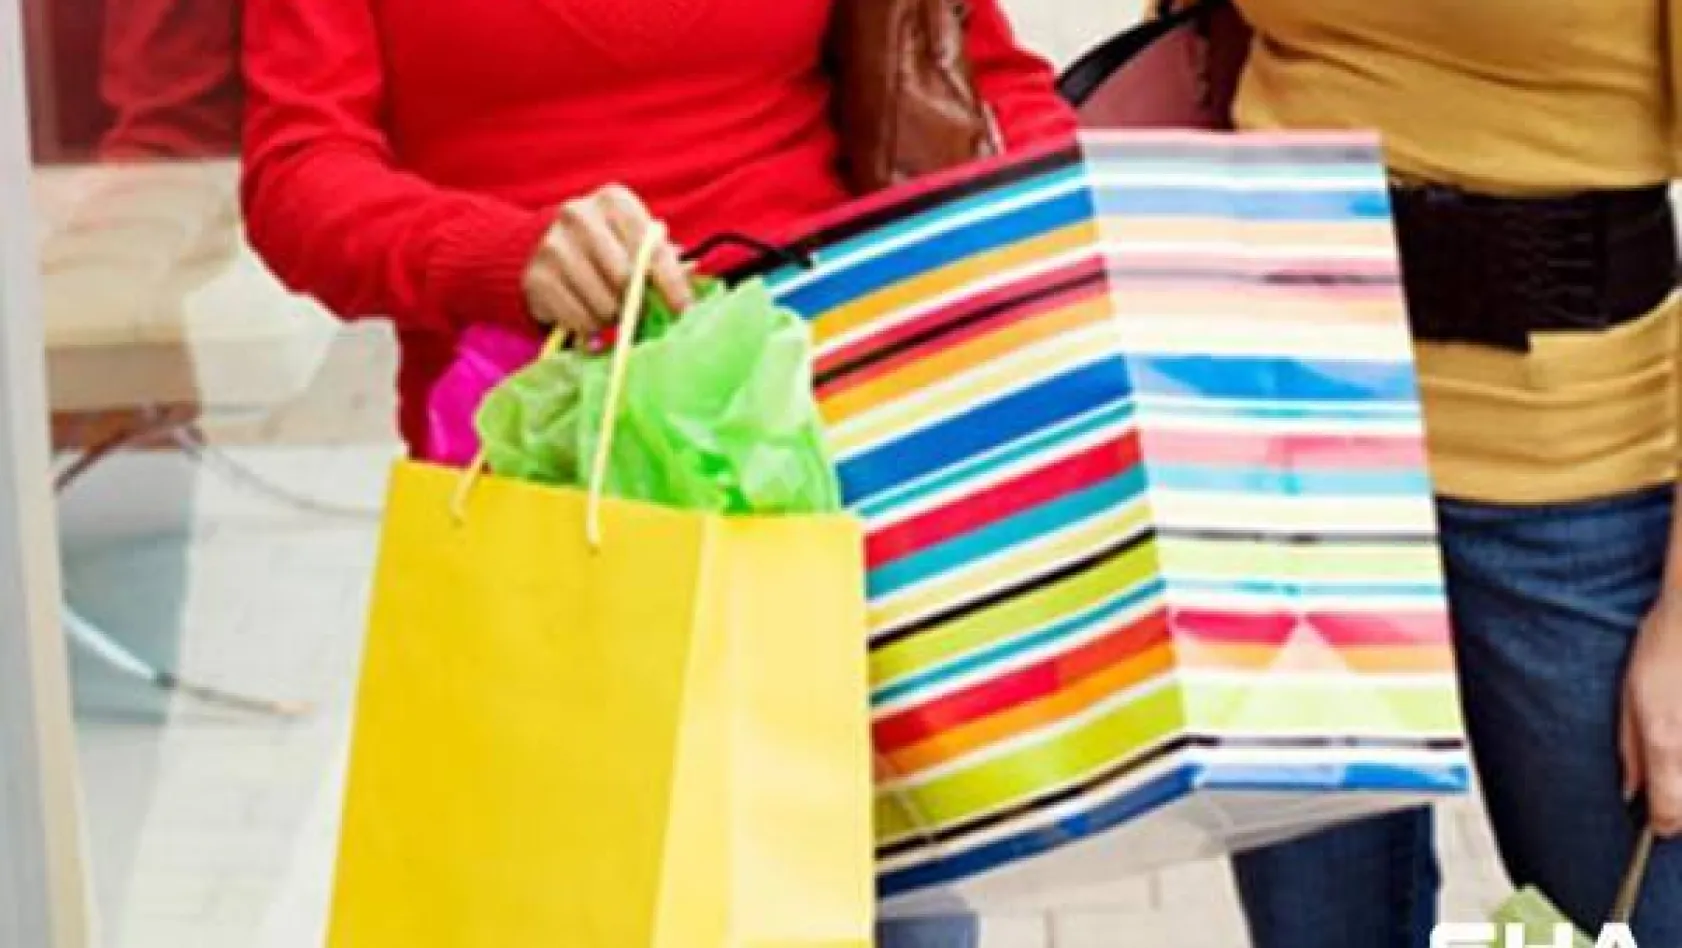 Tüketici psikolojisi araştırıldı haz için yapılan alışveriş mutluluk veriyor